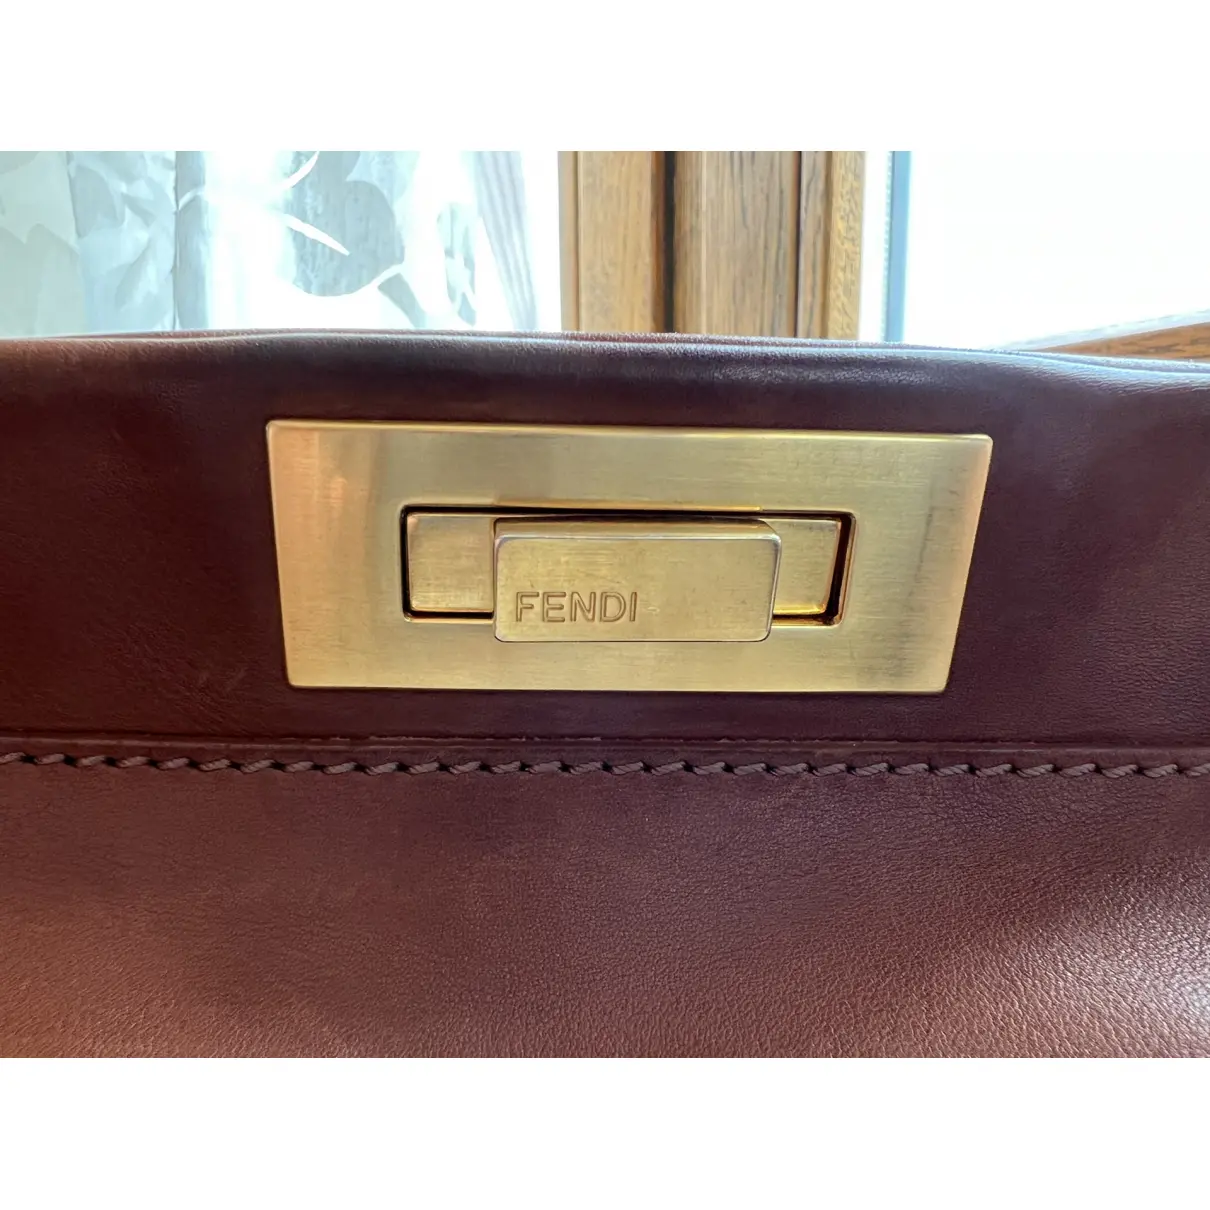 Buy Fendi Peekaboo IseeU leather handbag online